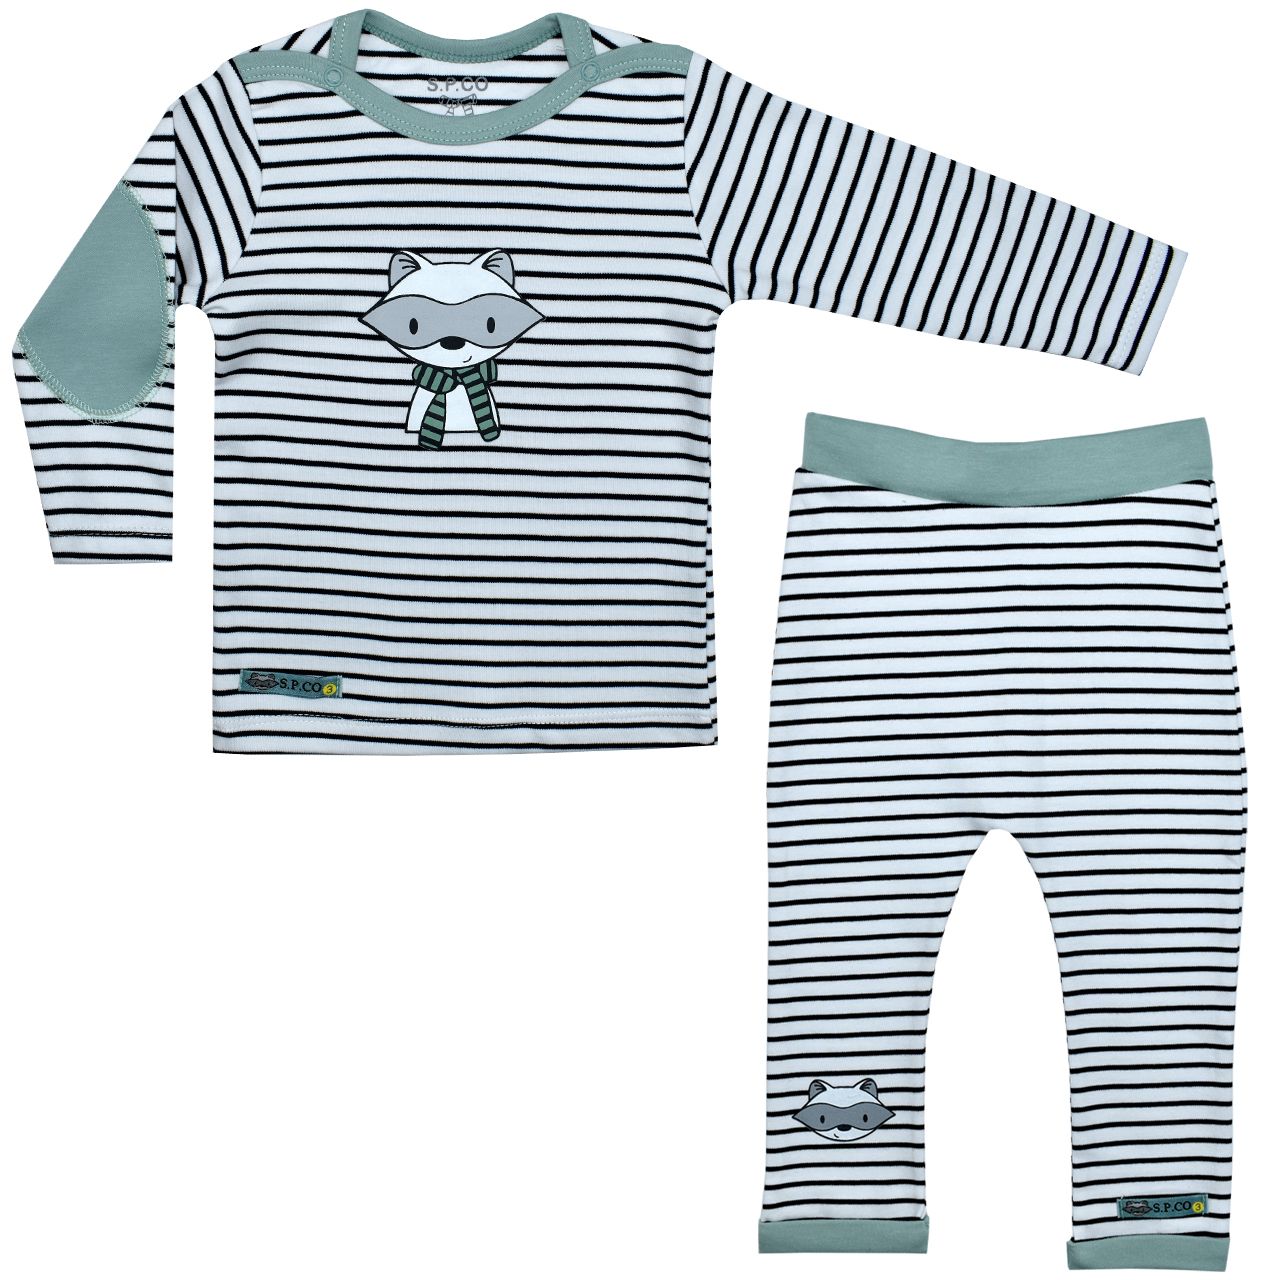 ست تی شرت و شلوار نوزادی اسپیکو مدل رافائل -  - 1